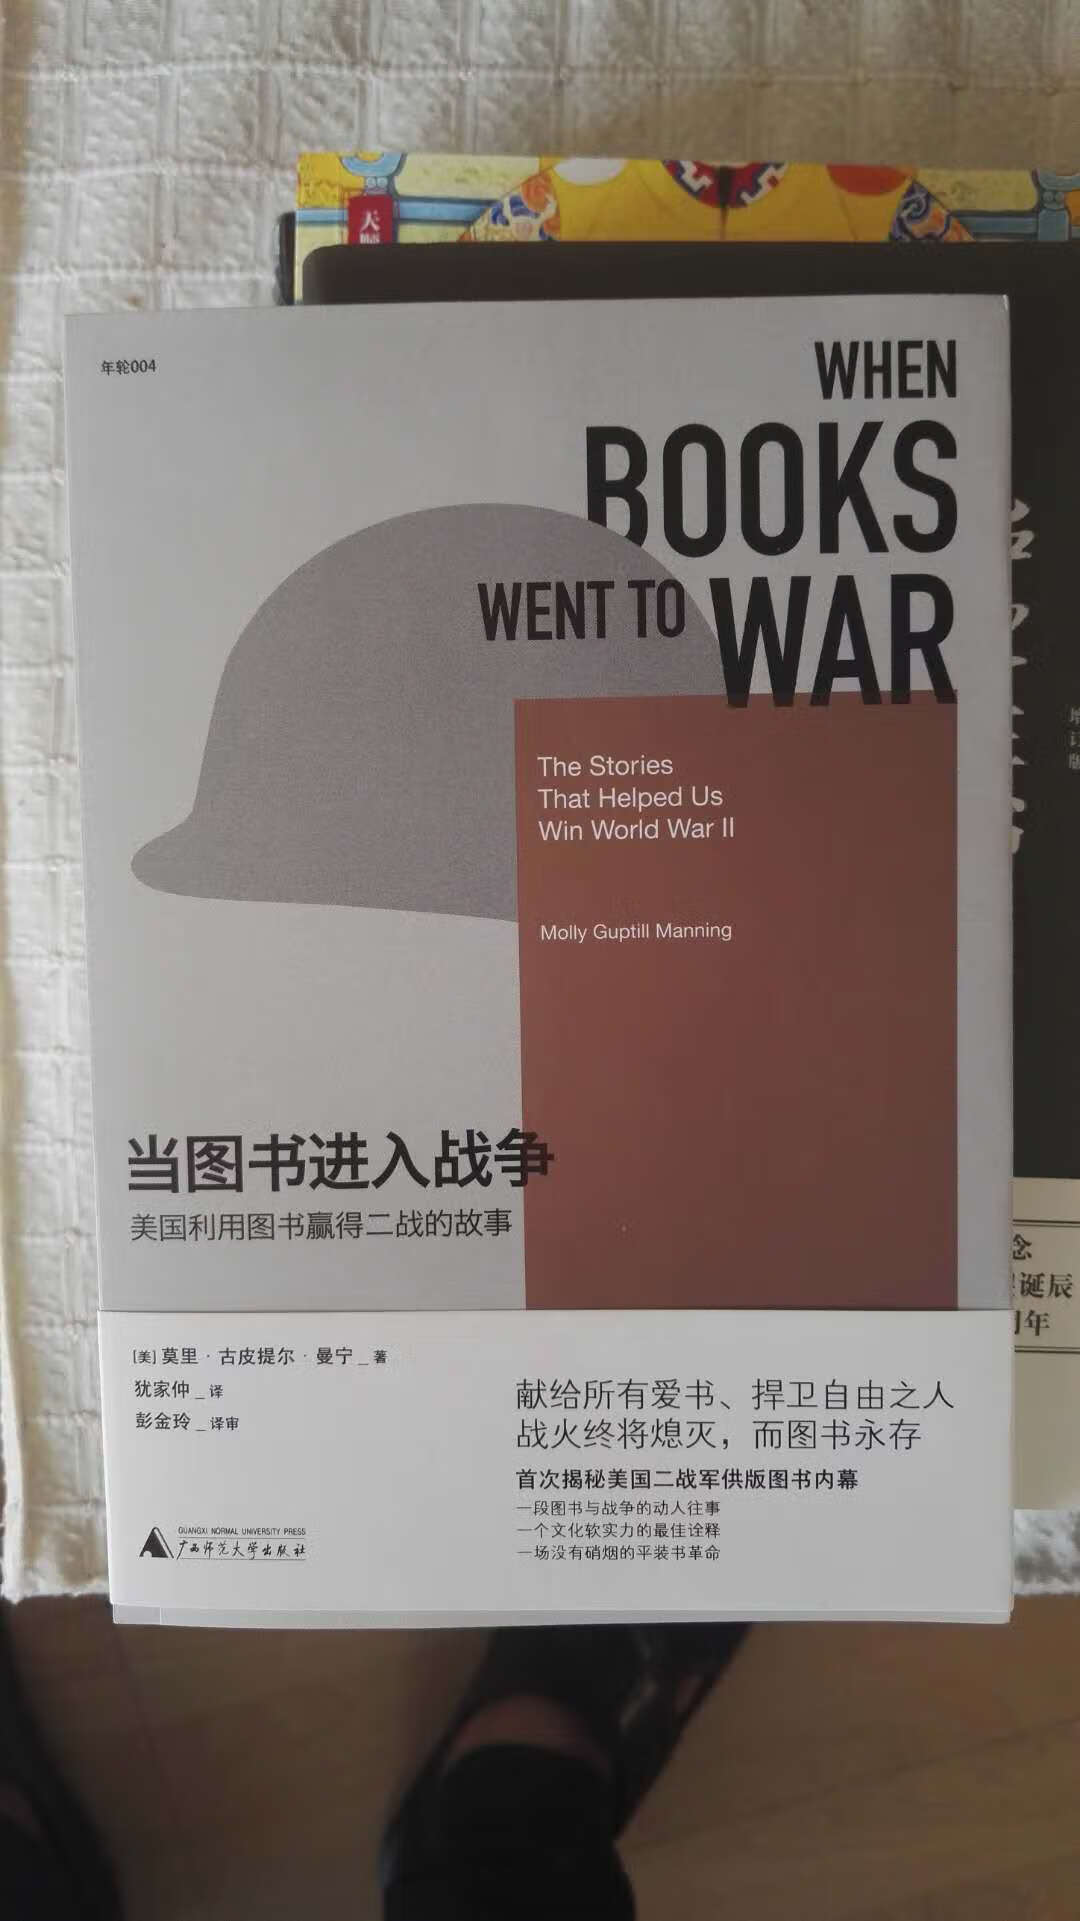 “战火终将熄灭，而图书永存”，美国利用图书赢得二战的故事。